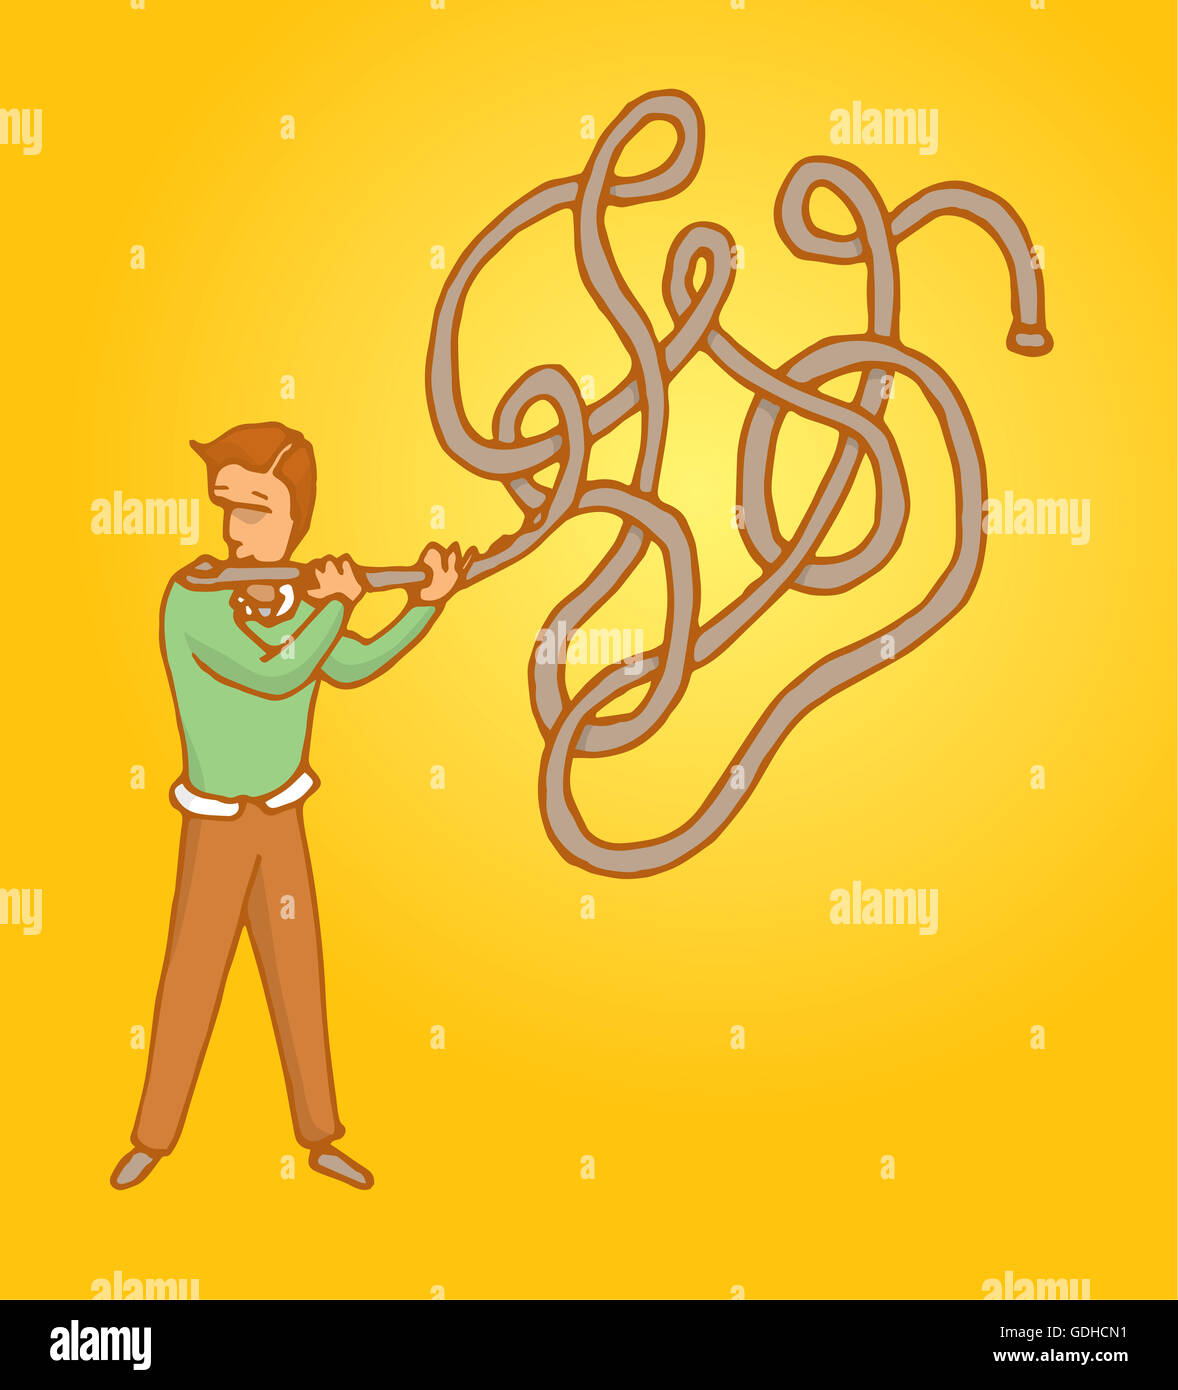 Cartoon illustration de l'homme jouant de la musique ou d'improviser sur une flûte complexe enchevêtrée Banque D'Images